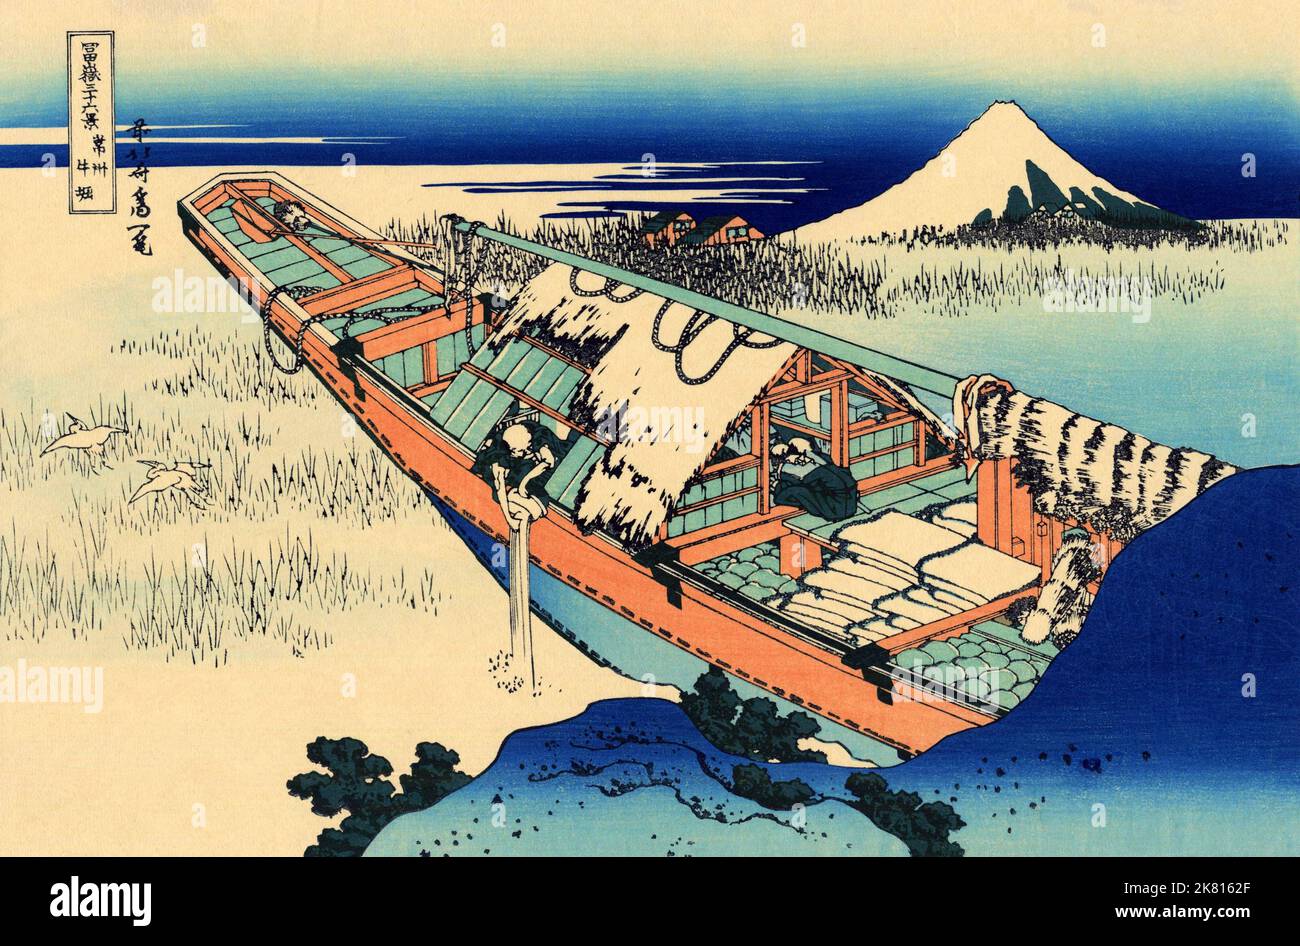 Japon: «Ushibori dans la province d’Hitachi».Imprimé Ukiyo-e en blocs de bois de la série «trente-six vues du Mont Fuji» de Katsushika Hokusai (31 octobre 1760 - 10 mai 1849), c.1830. «36 vues du Mont Fuji» est une série «ukiyo-e» de grandes gravures sur bois de l'artiste Katsushika Hokusai.La série représente le Mont Fuji dans différentes saisons et conditions météorologiques à partir de divers endroits et distances.Il se compose en fait de 46 tirages créés entre 1826 et 1833.Les 36 premiers ont été inclus dans la publication originale et, en raison de leur popularité, 10 autres ont été ajoutés après la publication originale. Banque D'Images